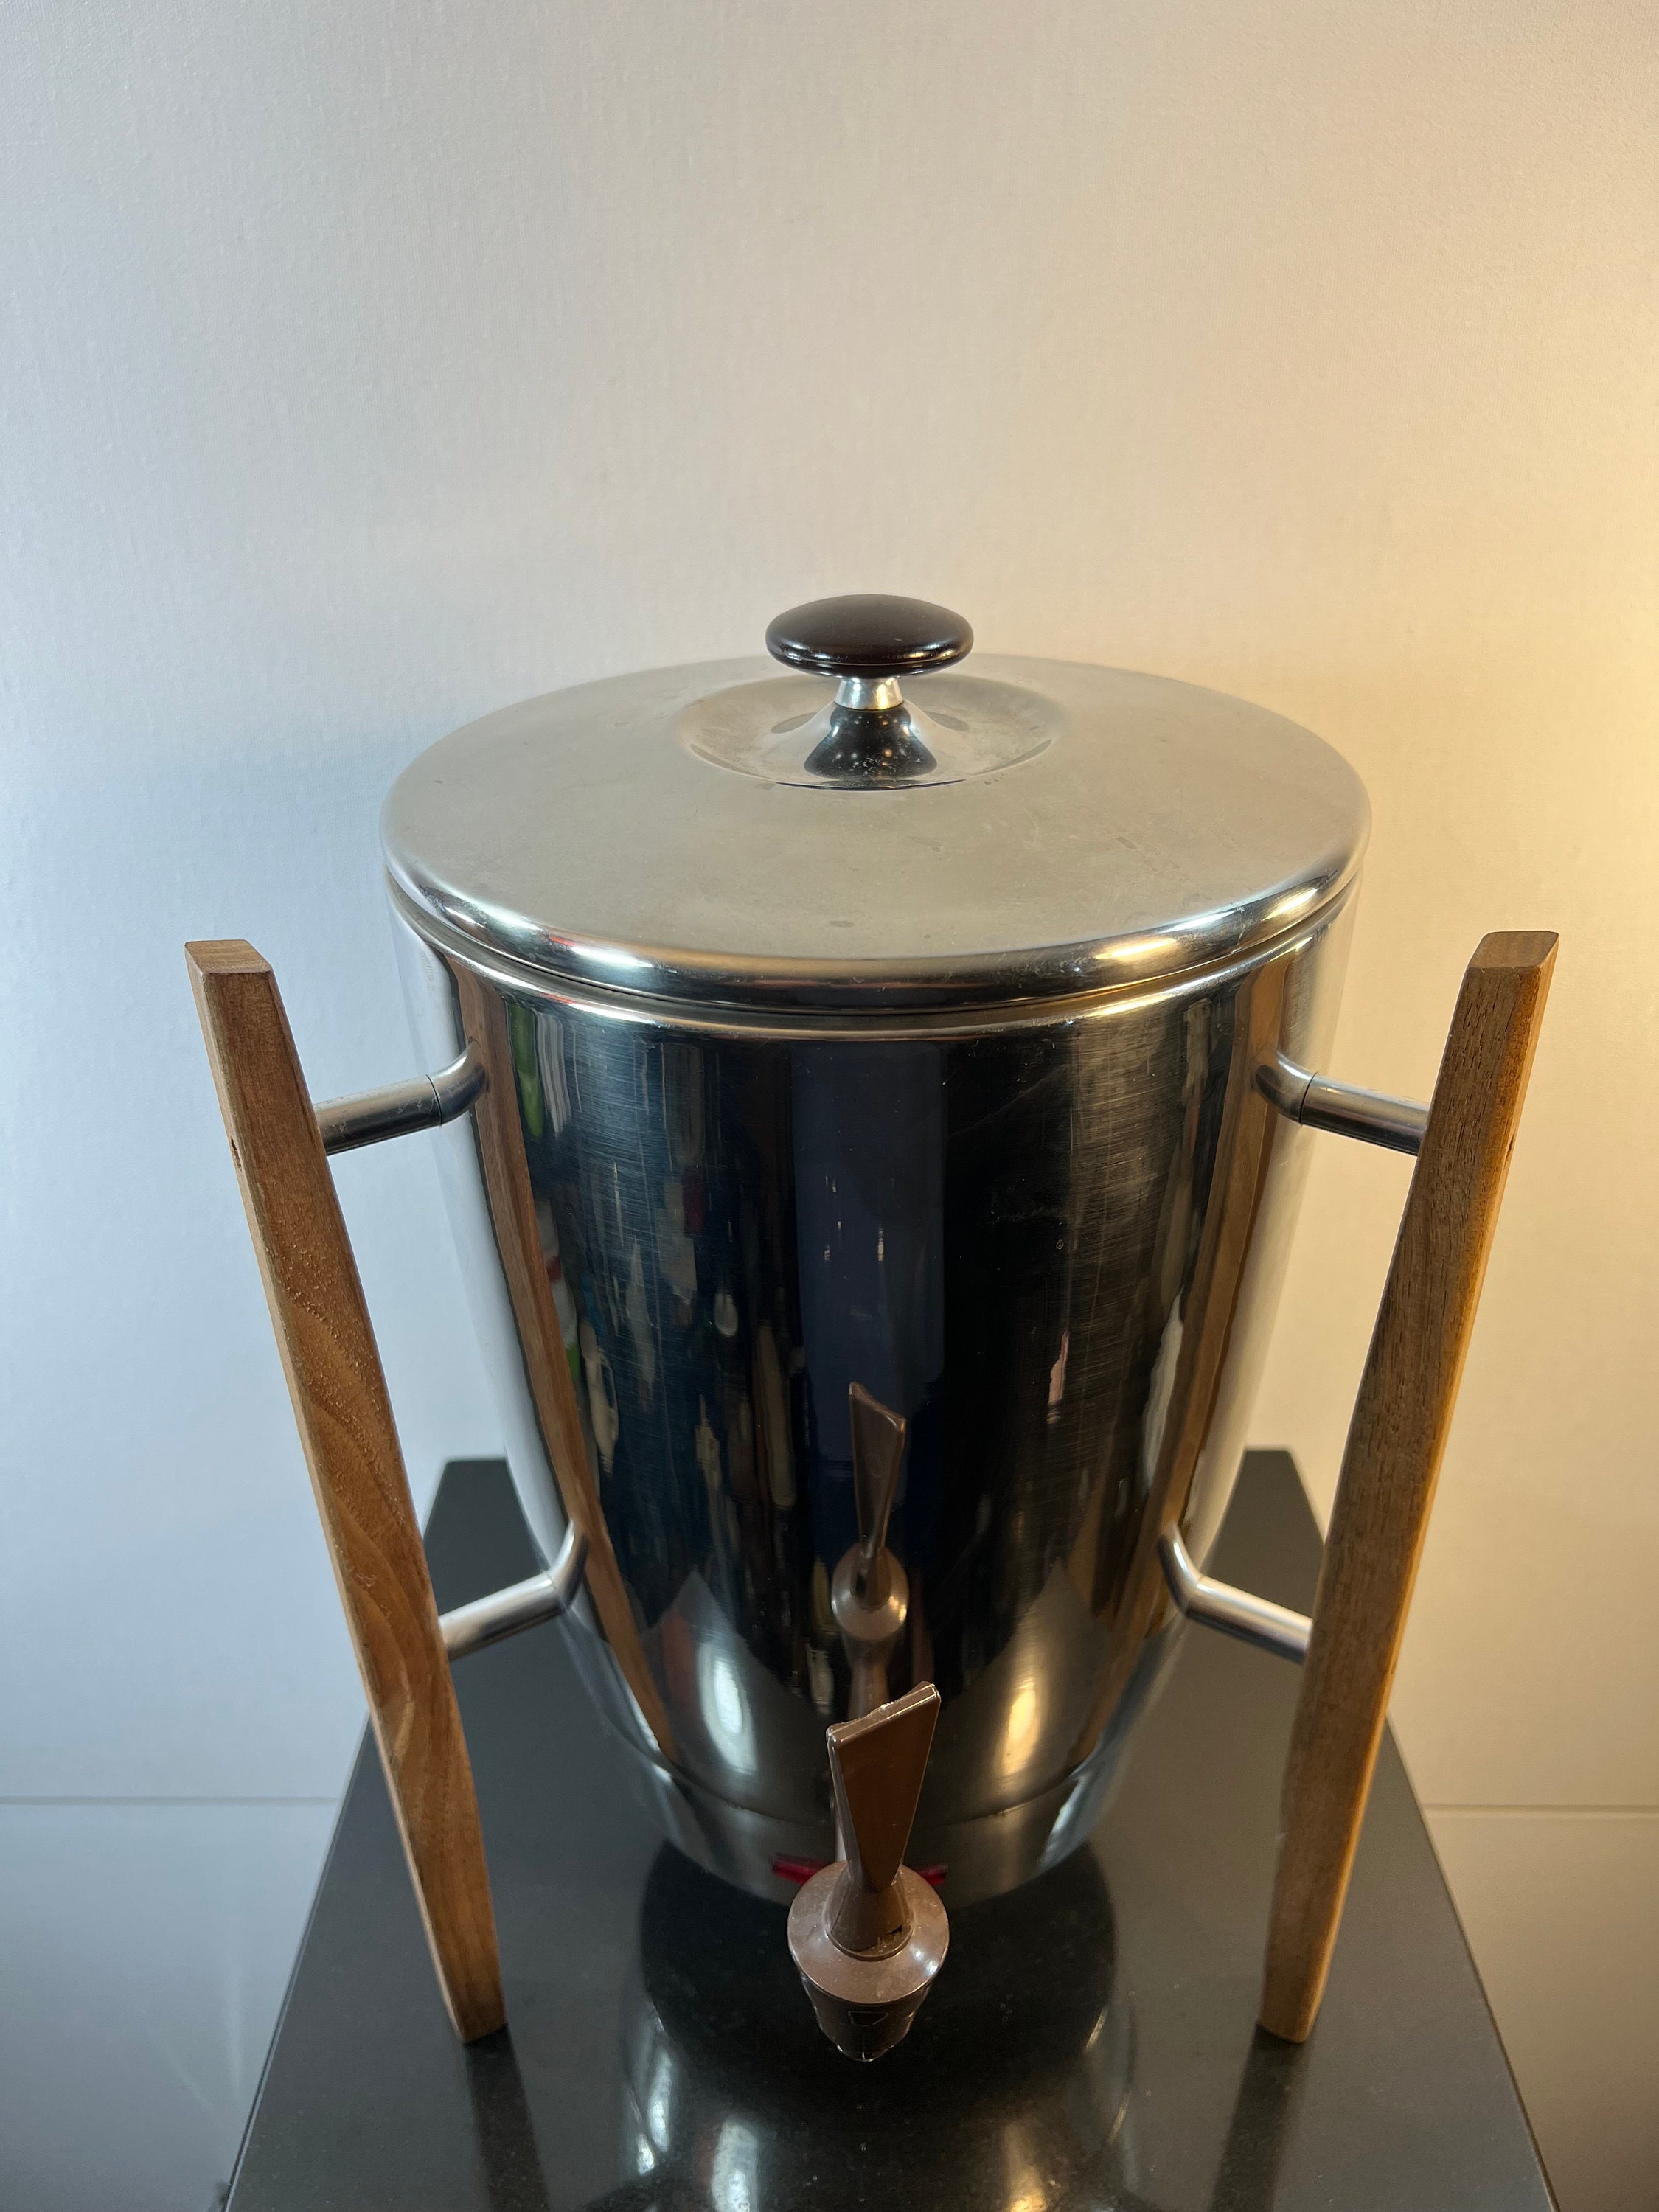 Vintage 1960's Regal MCM Mid Century Chrome Coffee Pot 40 Cup Percolat –  Shop Cool Vintage Decor